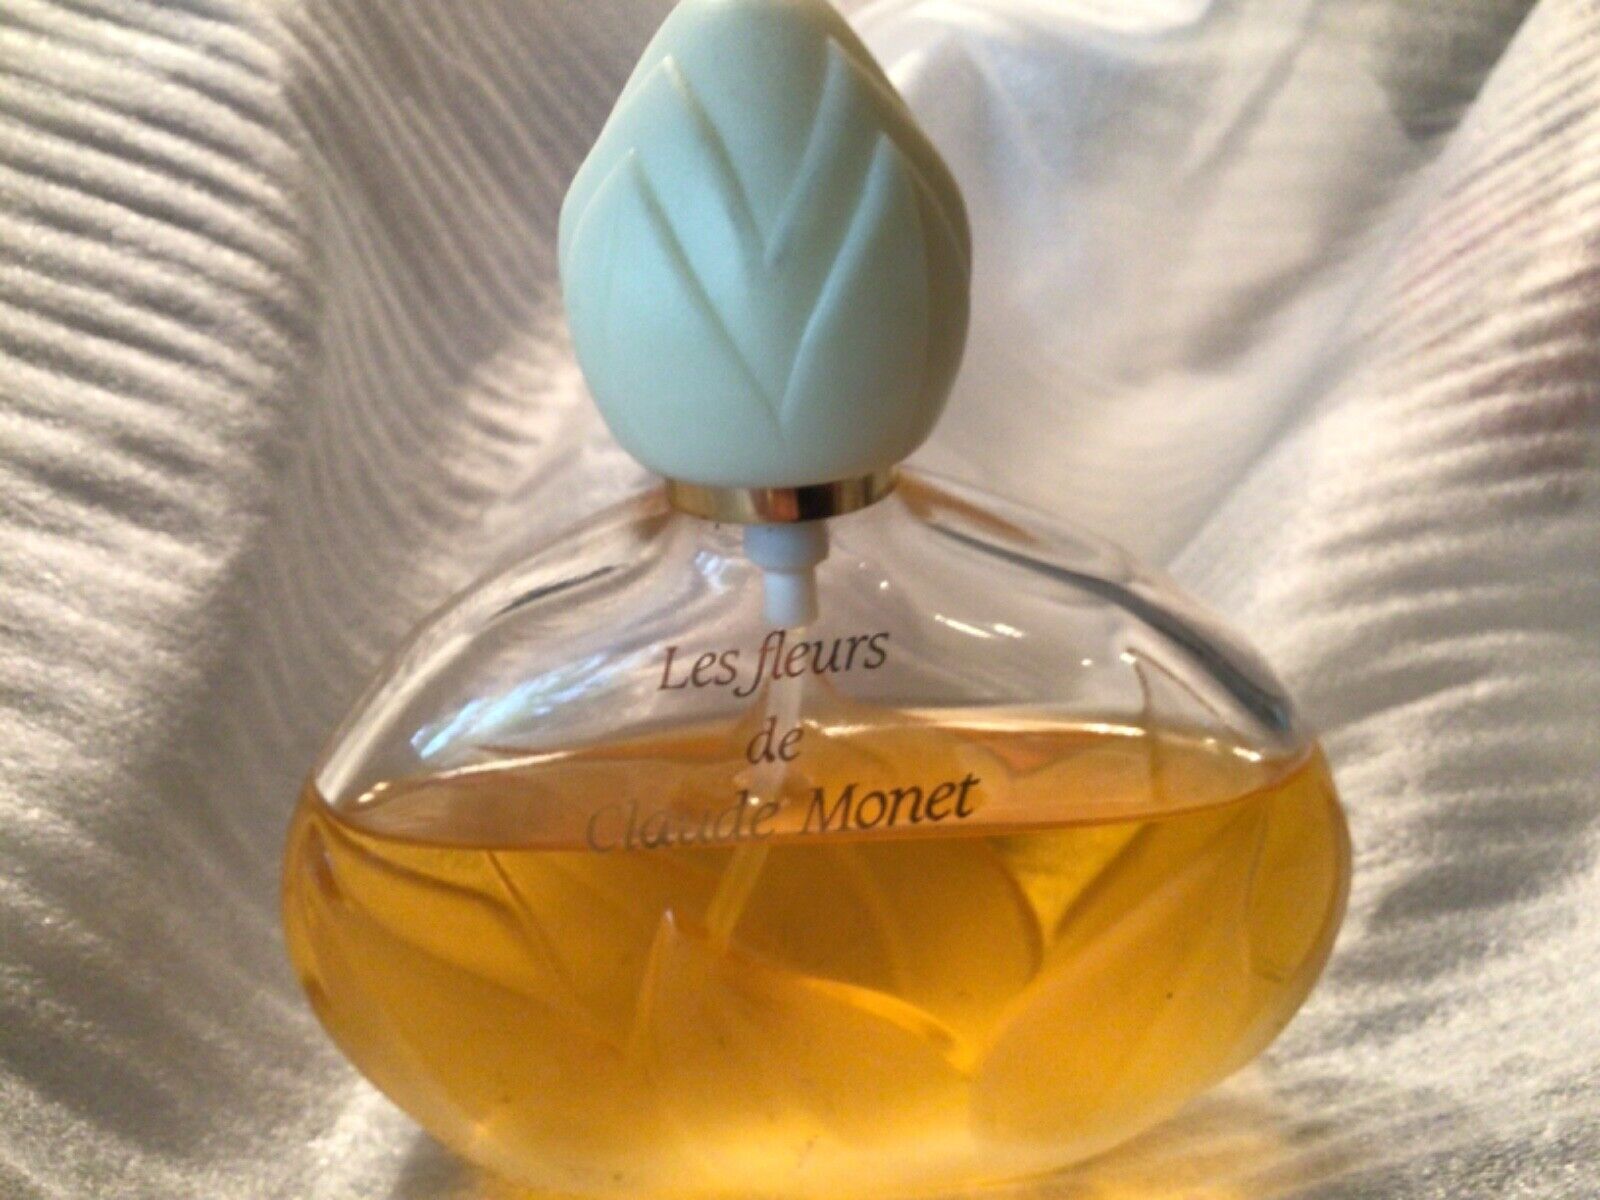 Les Fleurs de Claude Monet Impression Vintage Perfume PdT 3.4 oz (100 ml)